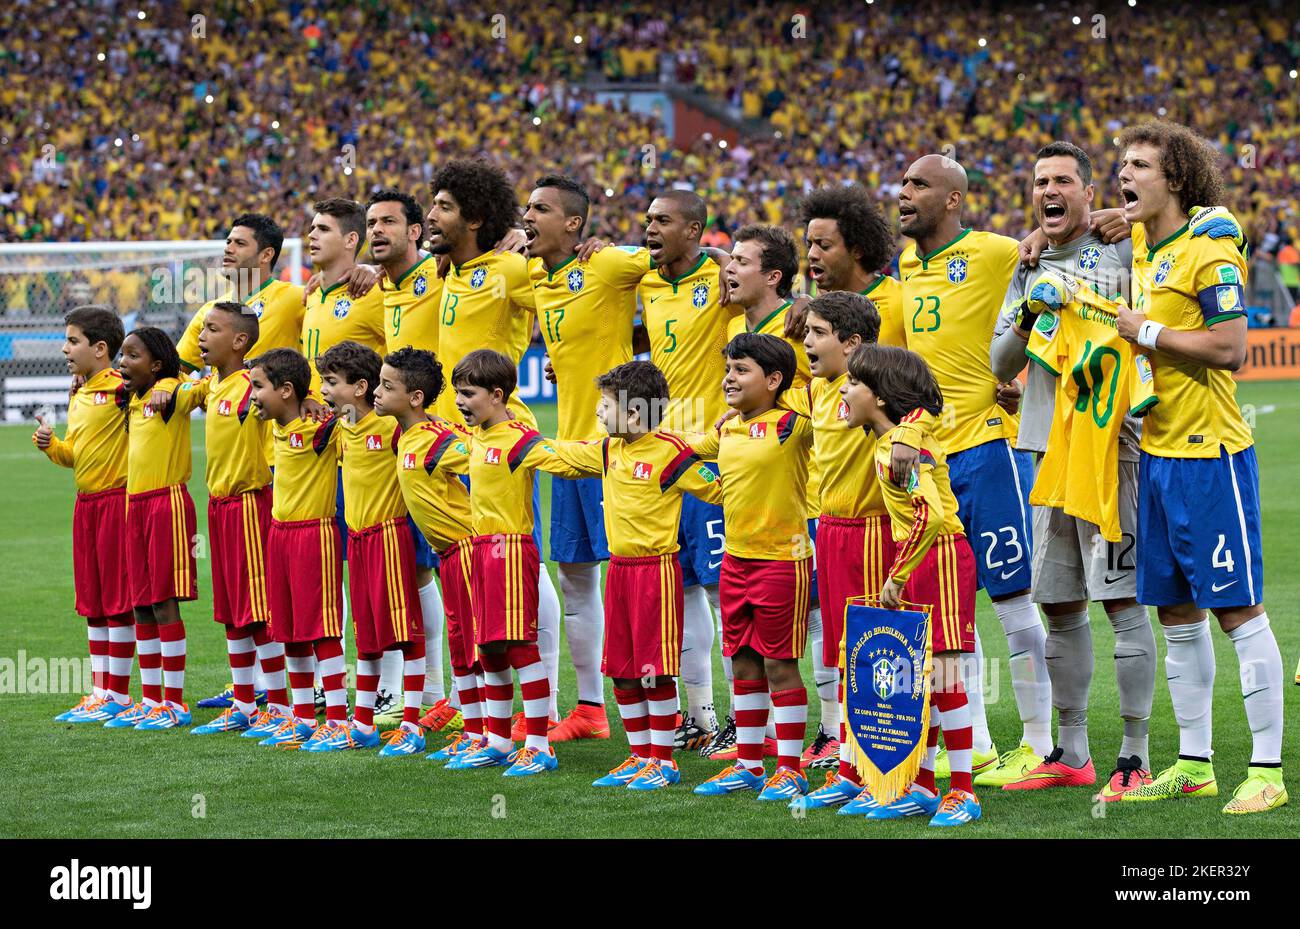 Belo Horizonte, 08.07.2014, Estadio Mineirao Brasilianer singen mit voller Leidenschaft die Nationalhymne - Neymar (Brasilien) Trikot ist mit dabei Br Stock Photo